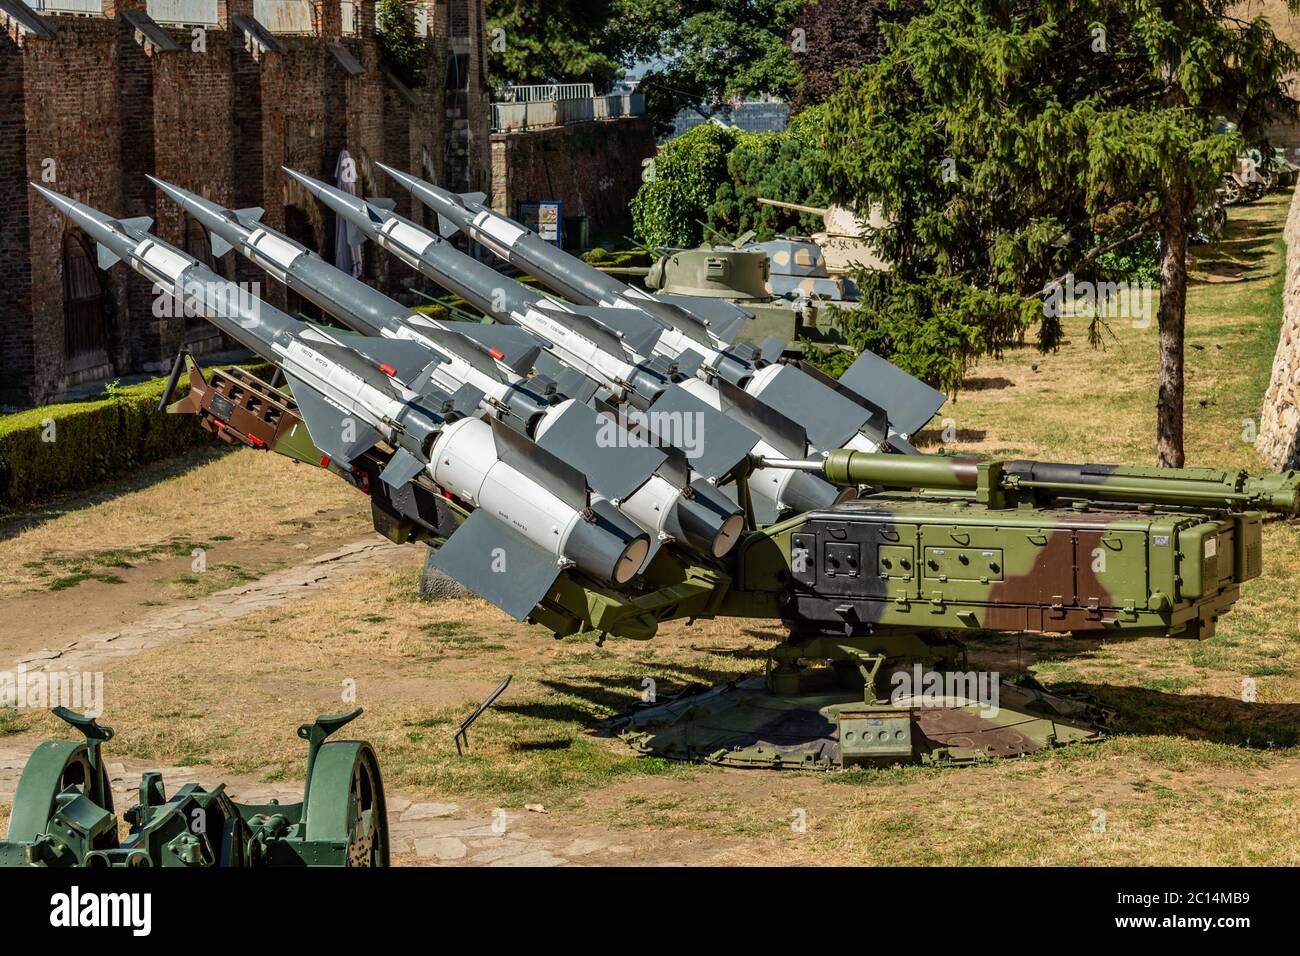 Belgrad / Serbien - 30. Juli 2017: Batterie der jugoslawischen Version des sowjetischen S-125 Neva-Raketensystems, das F-117A während des NATO-Bombenanschlags auf Yu abschoss Stockfoto